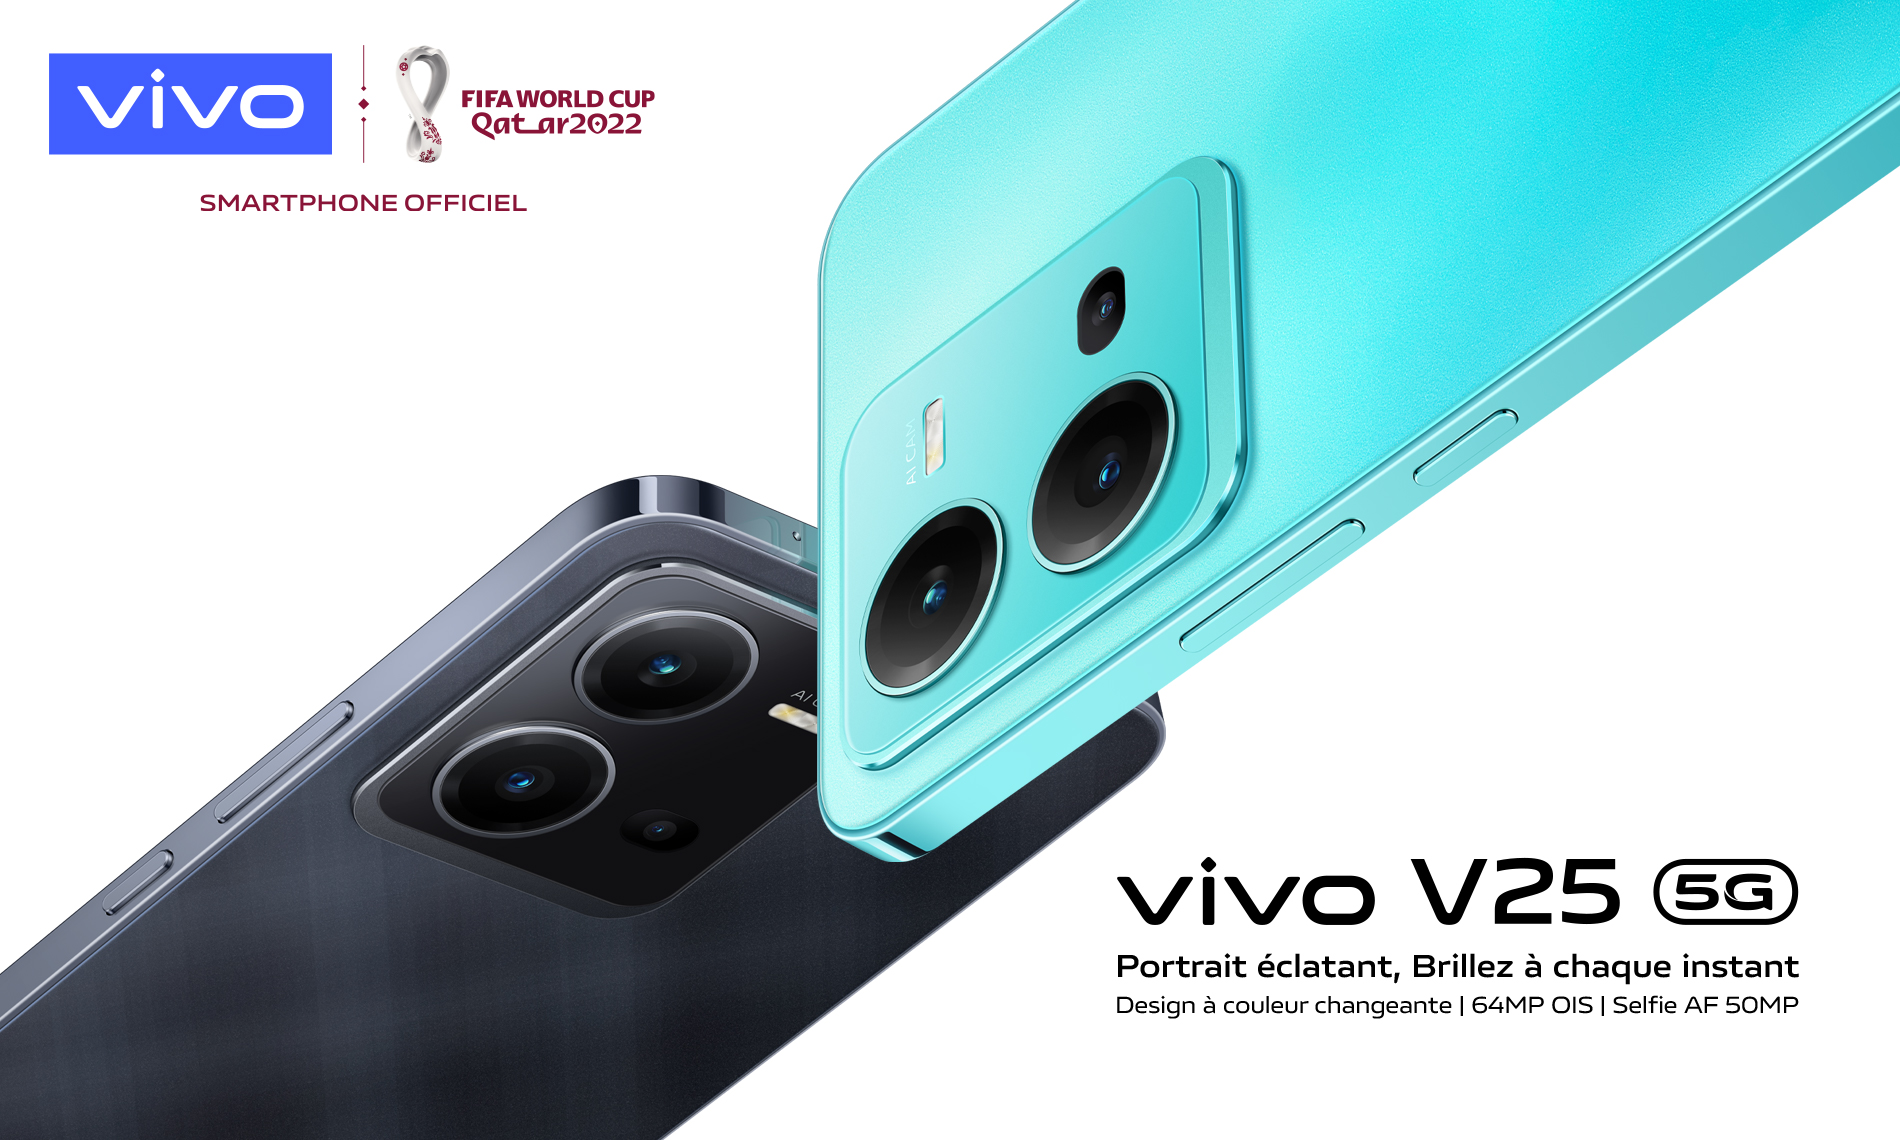 شركة Vivo تُطلق هاتف V25 5G الجديد عالي الأداء بتصميم مُتغير اللون وميزات تصوير مُحسنة للإبداع في التعبير